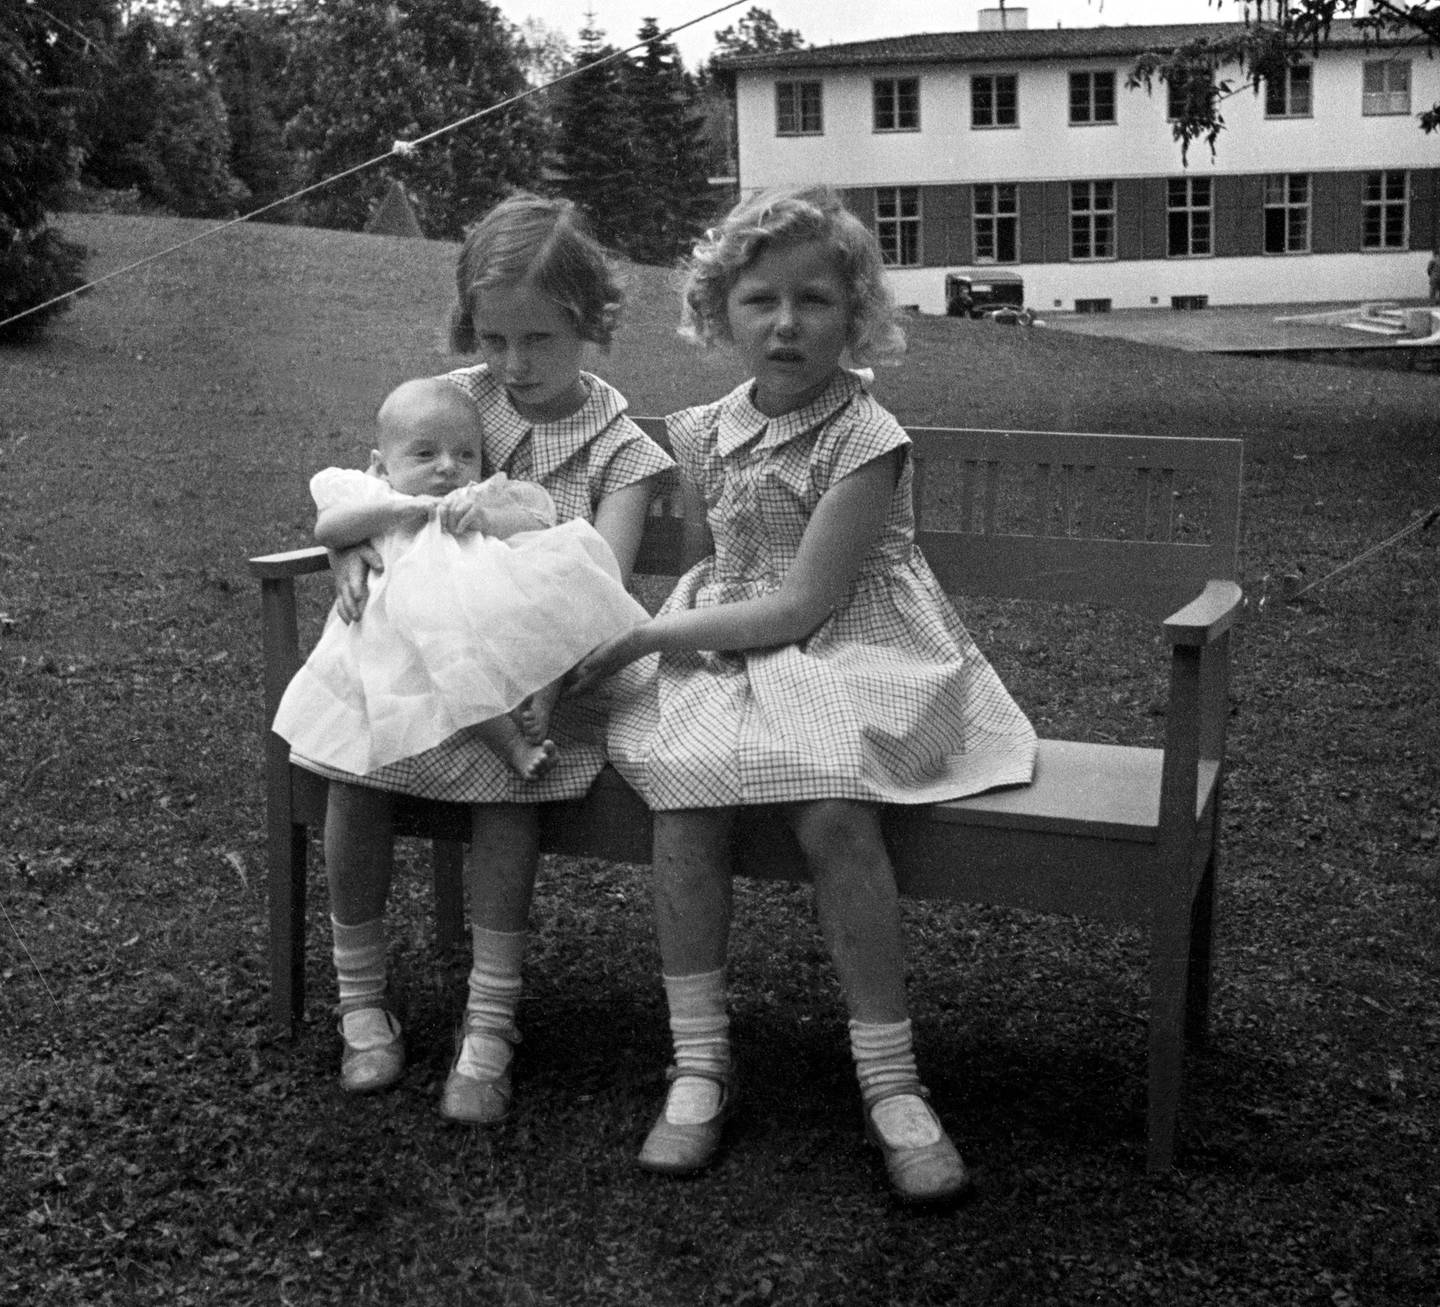 SKAUGUM Juni 1937.  Prinsesse Ragnhild  (tv) og prinsesse Astrid med prins Harald, ca seks måneder gammel. De tre sammen, sittende på en benk i hagen.
Foto: NTB scanpix